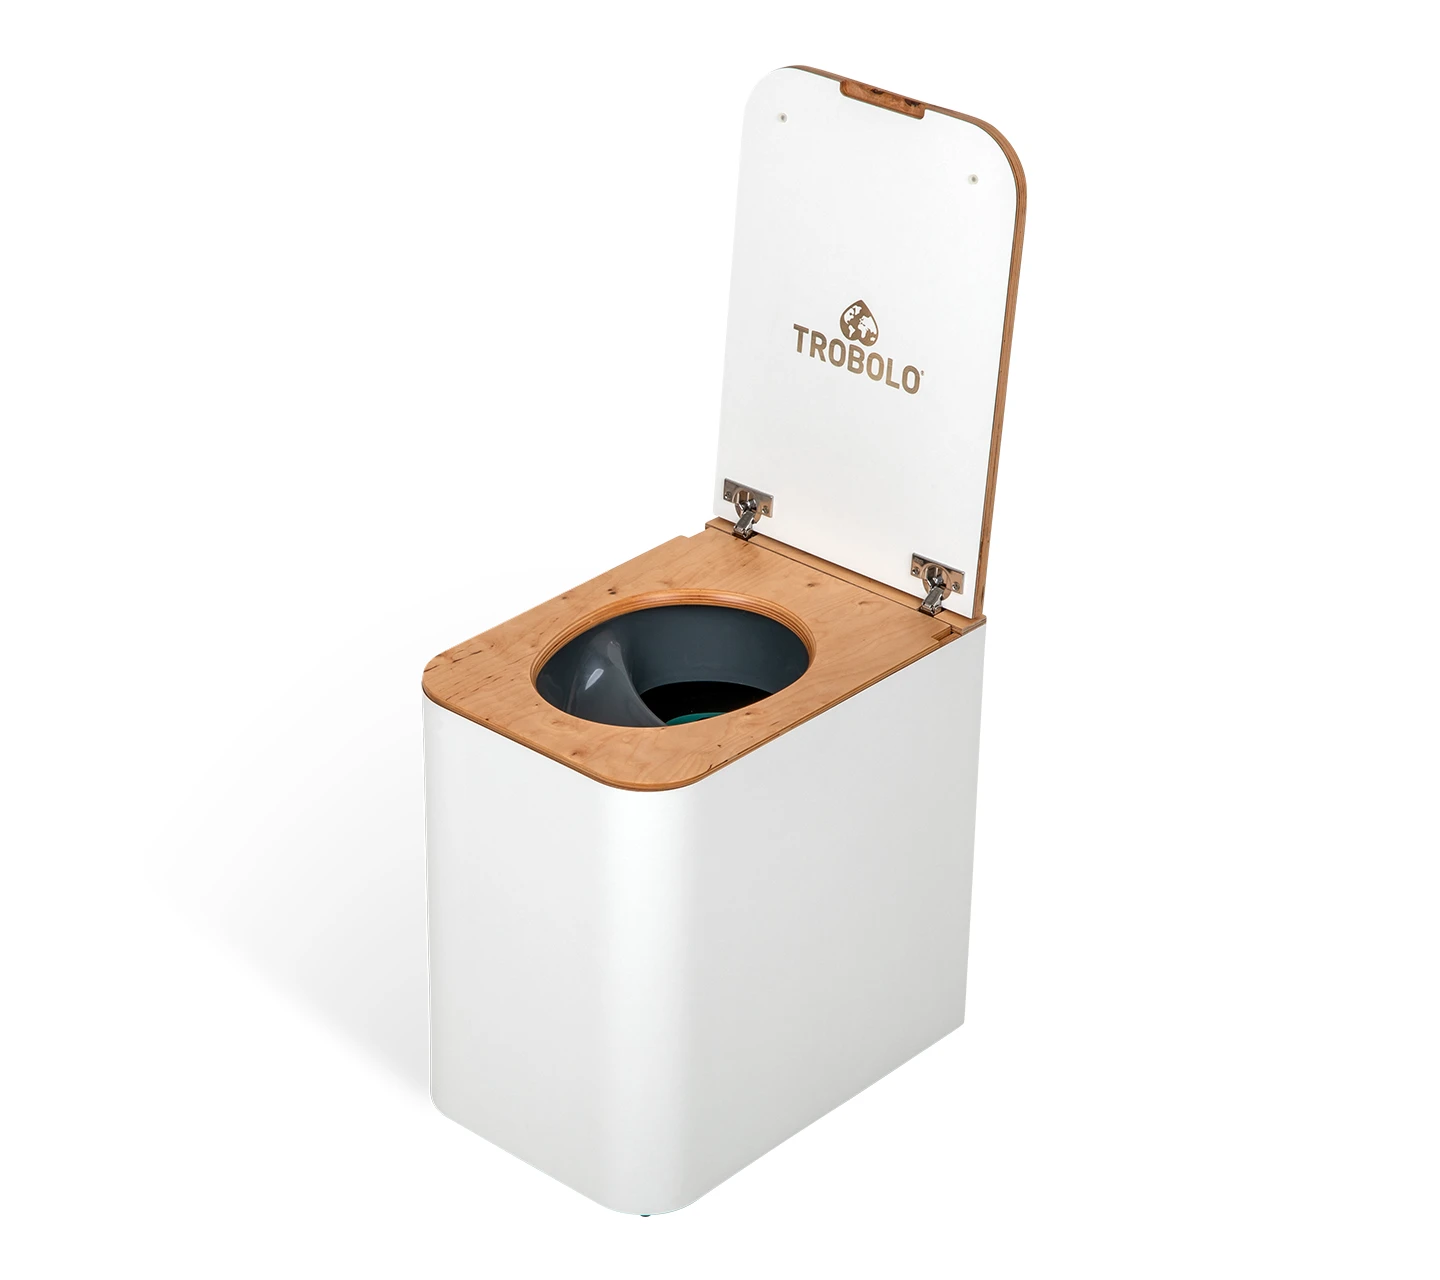 Toilette sèche, notre modèle - Roulottes Farigoule By Stef menuisier